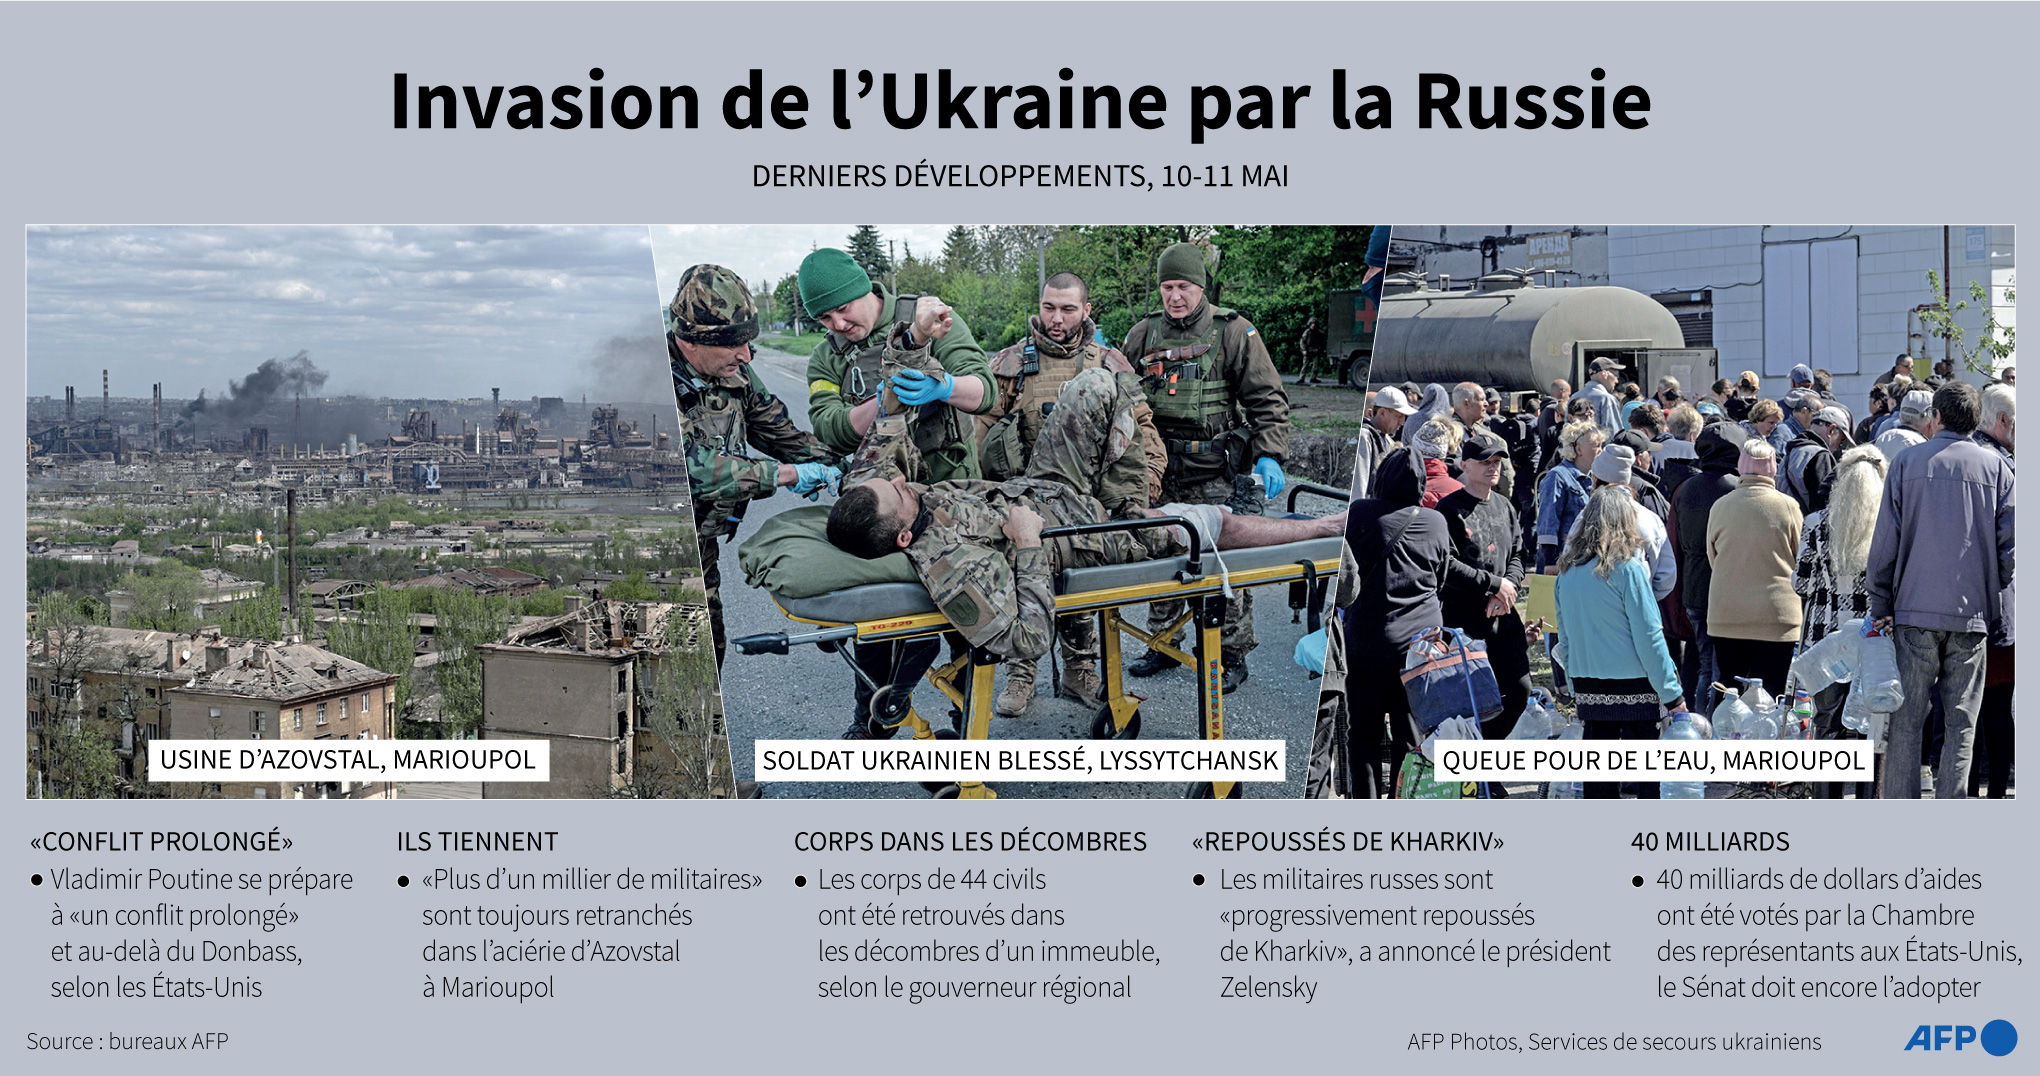 Invasion de l'Ukraine par la Russie, derniers développements avec photos